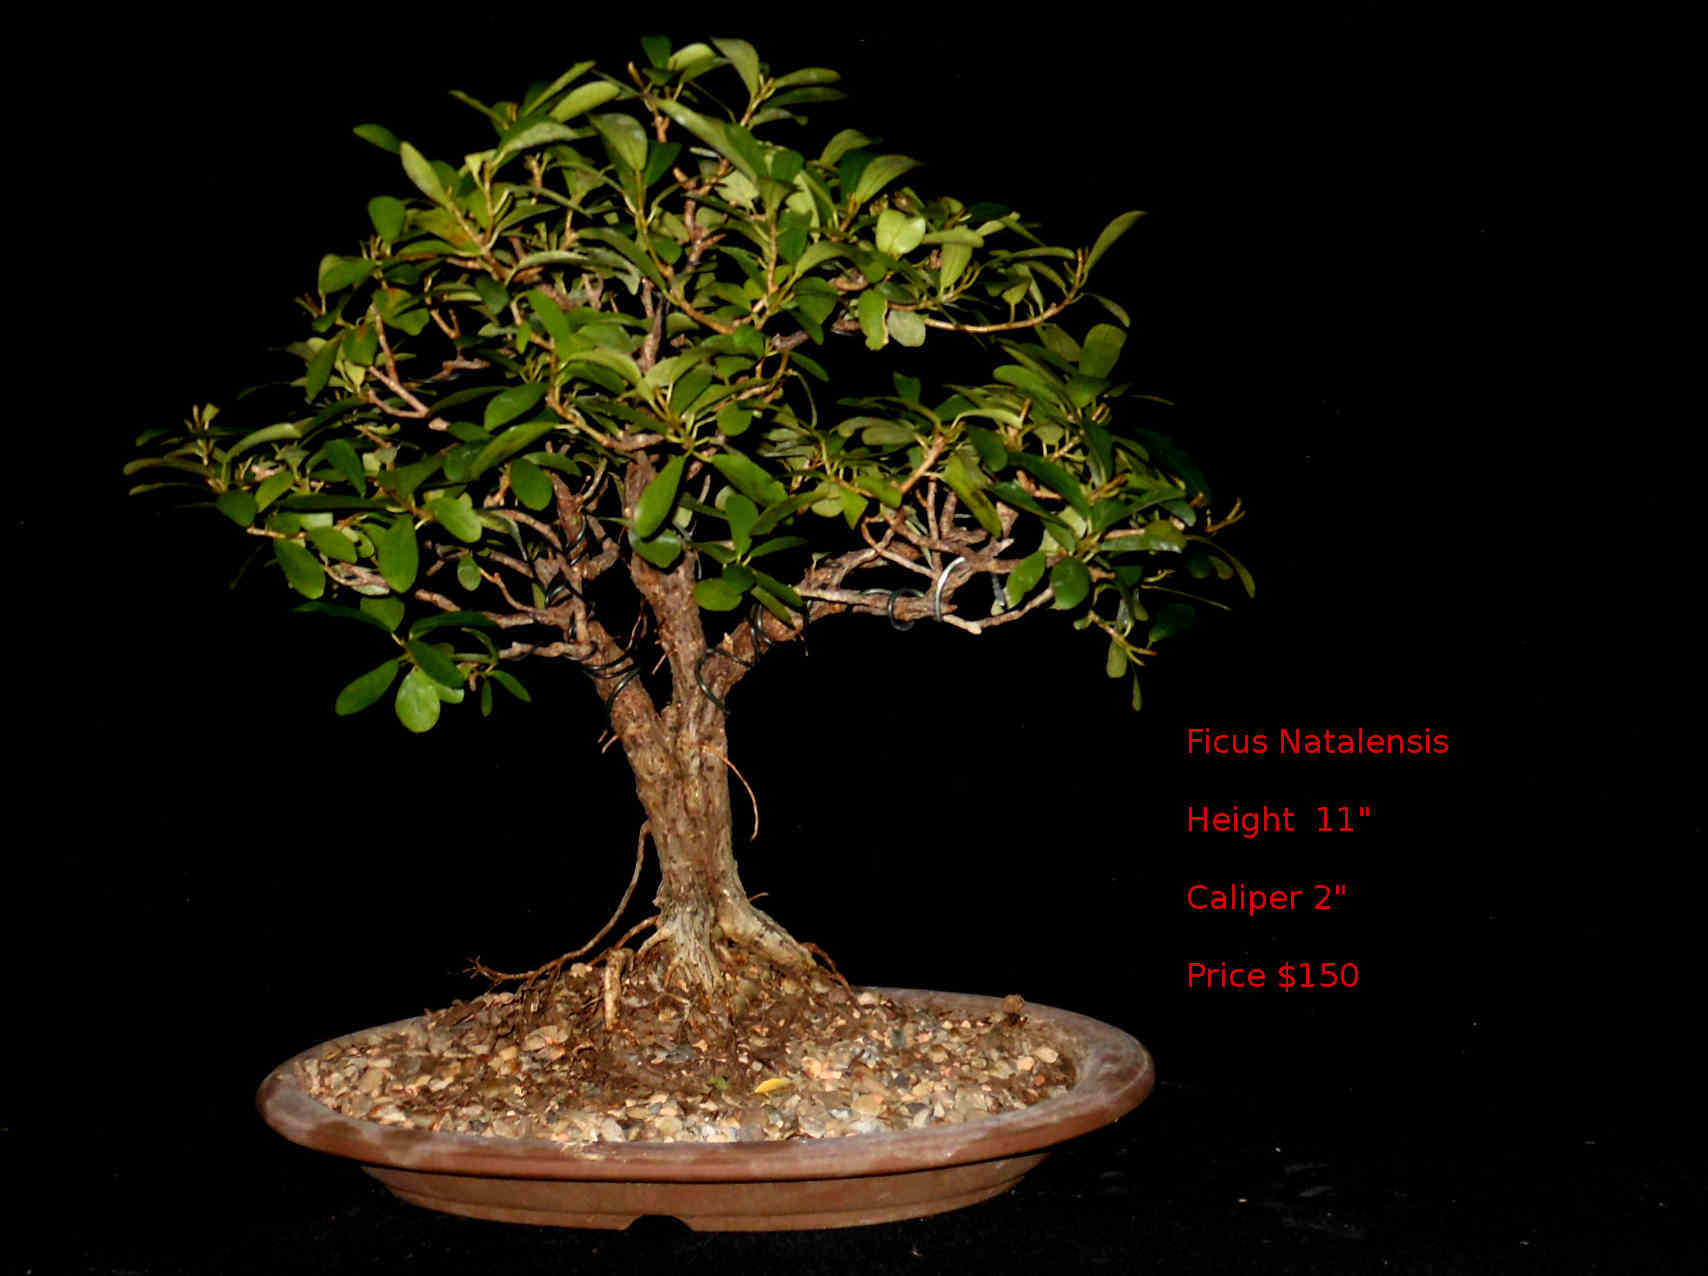 FN7422 Ficus Natalensis